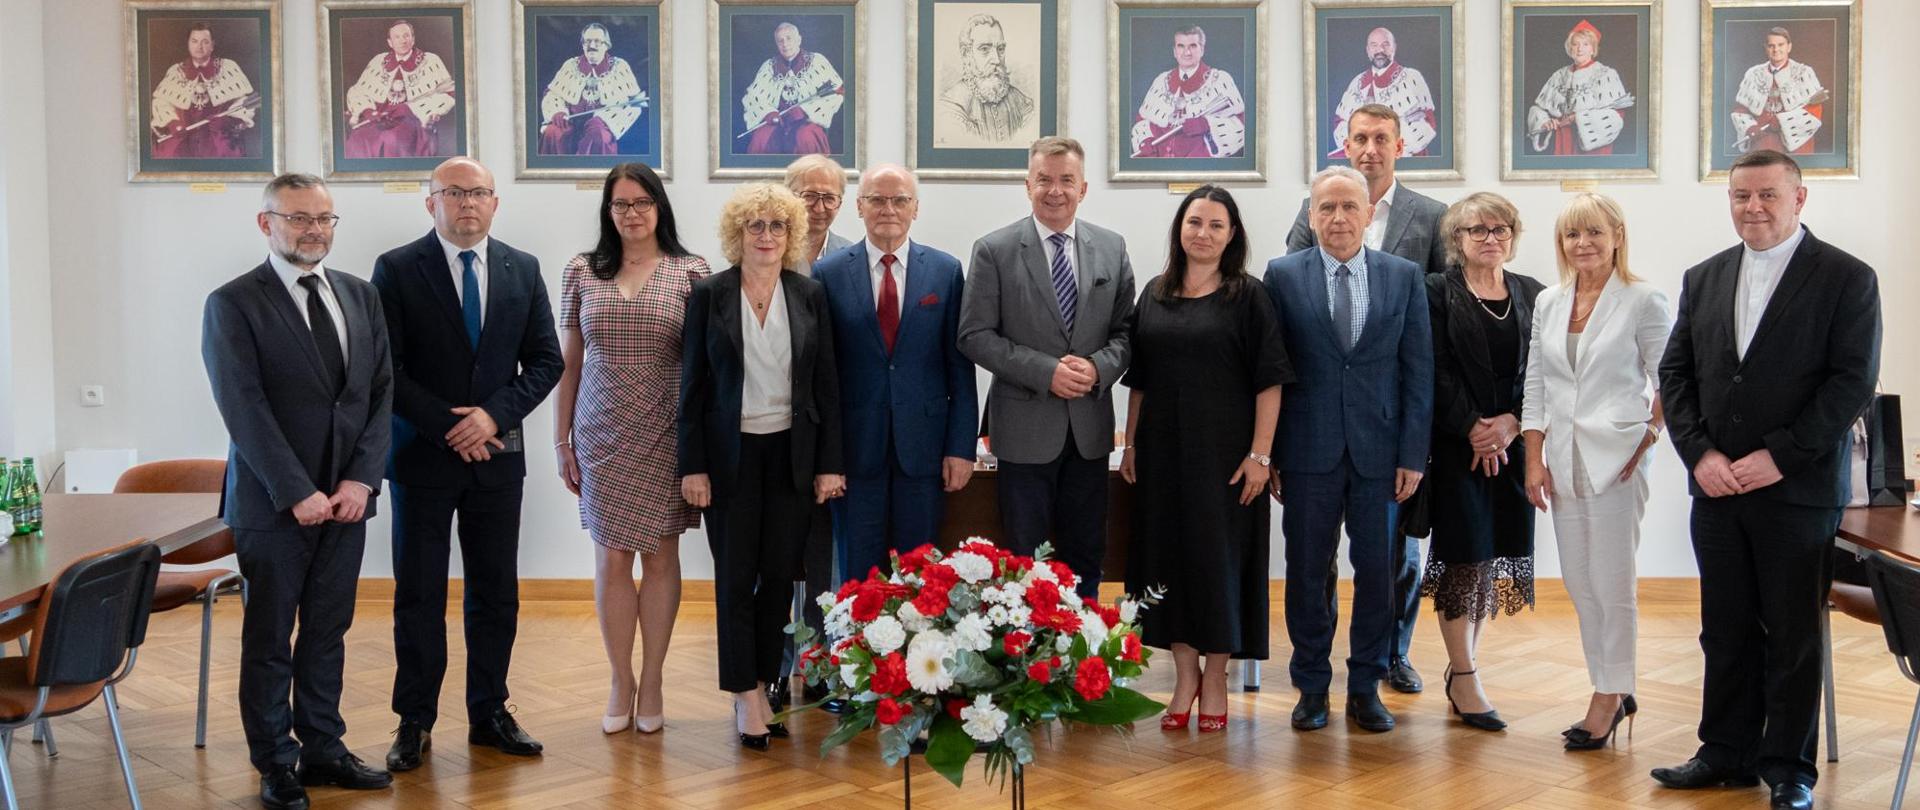 Zdjęcie zbiorowe, pod ścianą na której wisi rząd portretów stoi grupa trzynastu osób, pośrodku minister Wieczorek, przed grupą na podłodze bukiet biało-czerwonych kwiatów.